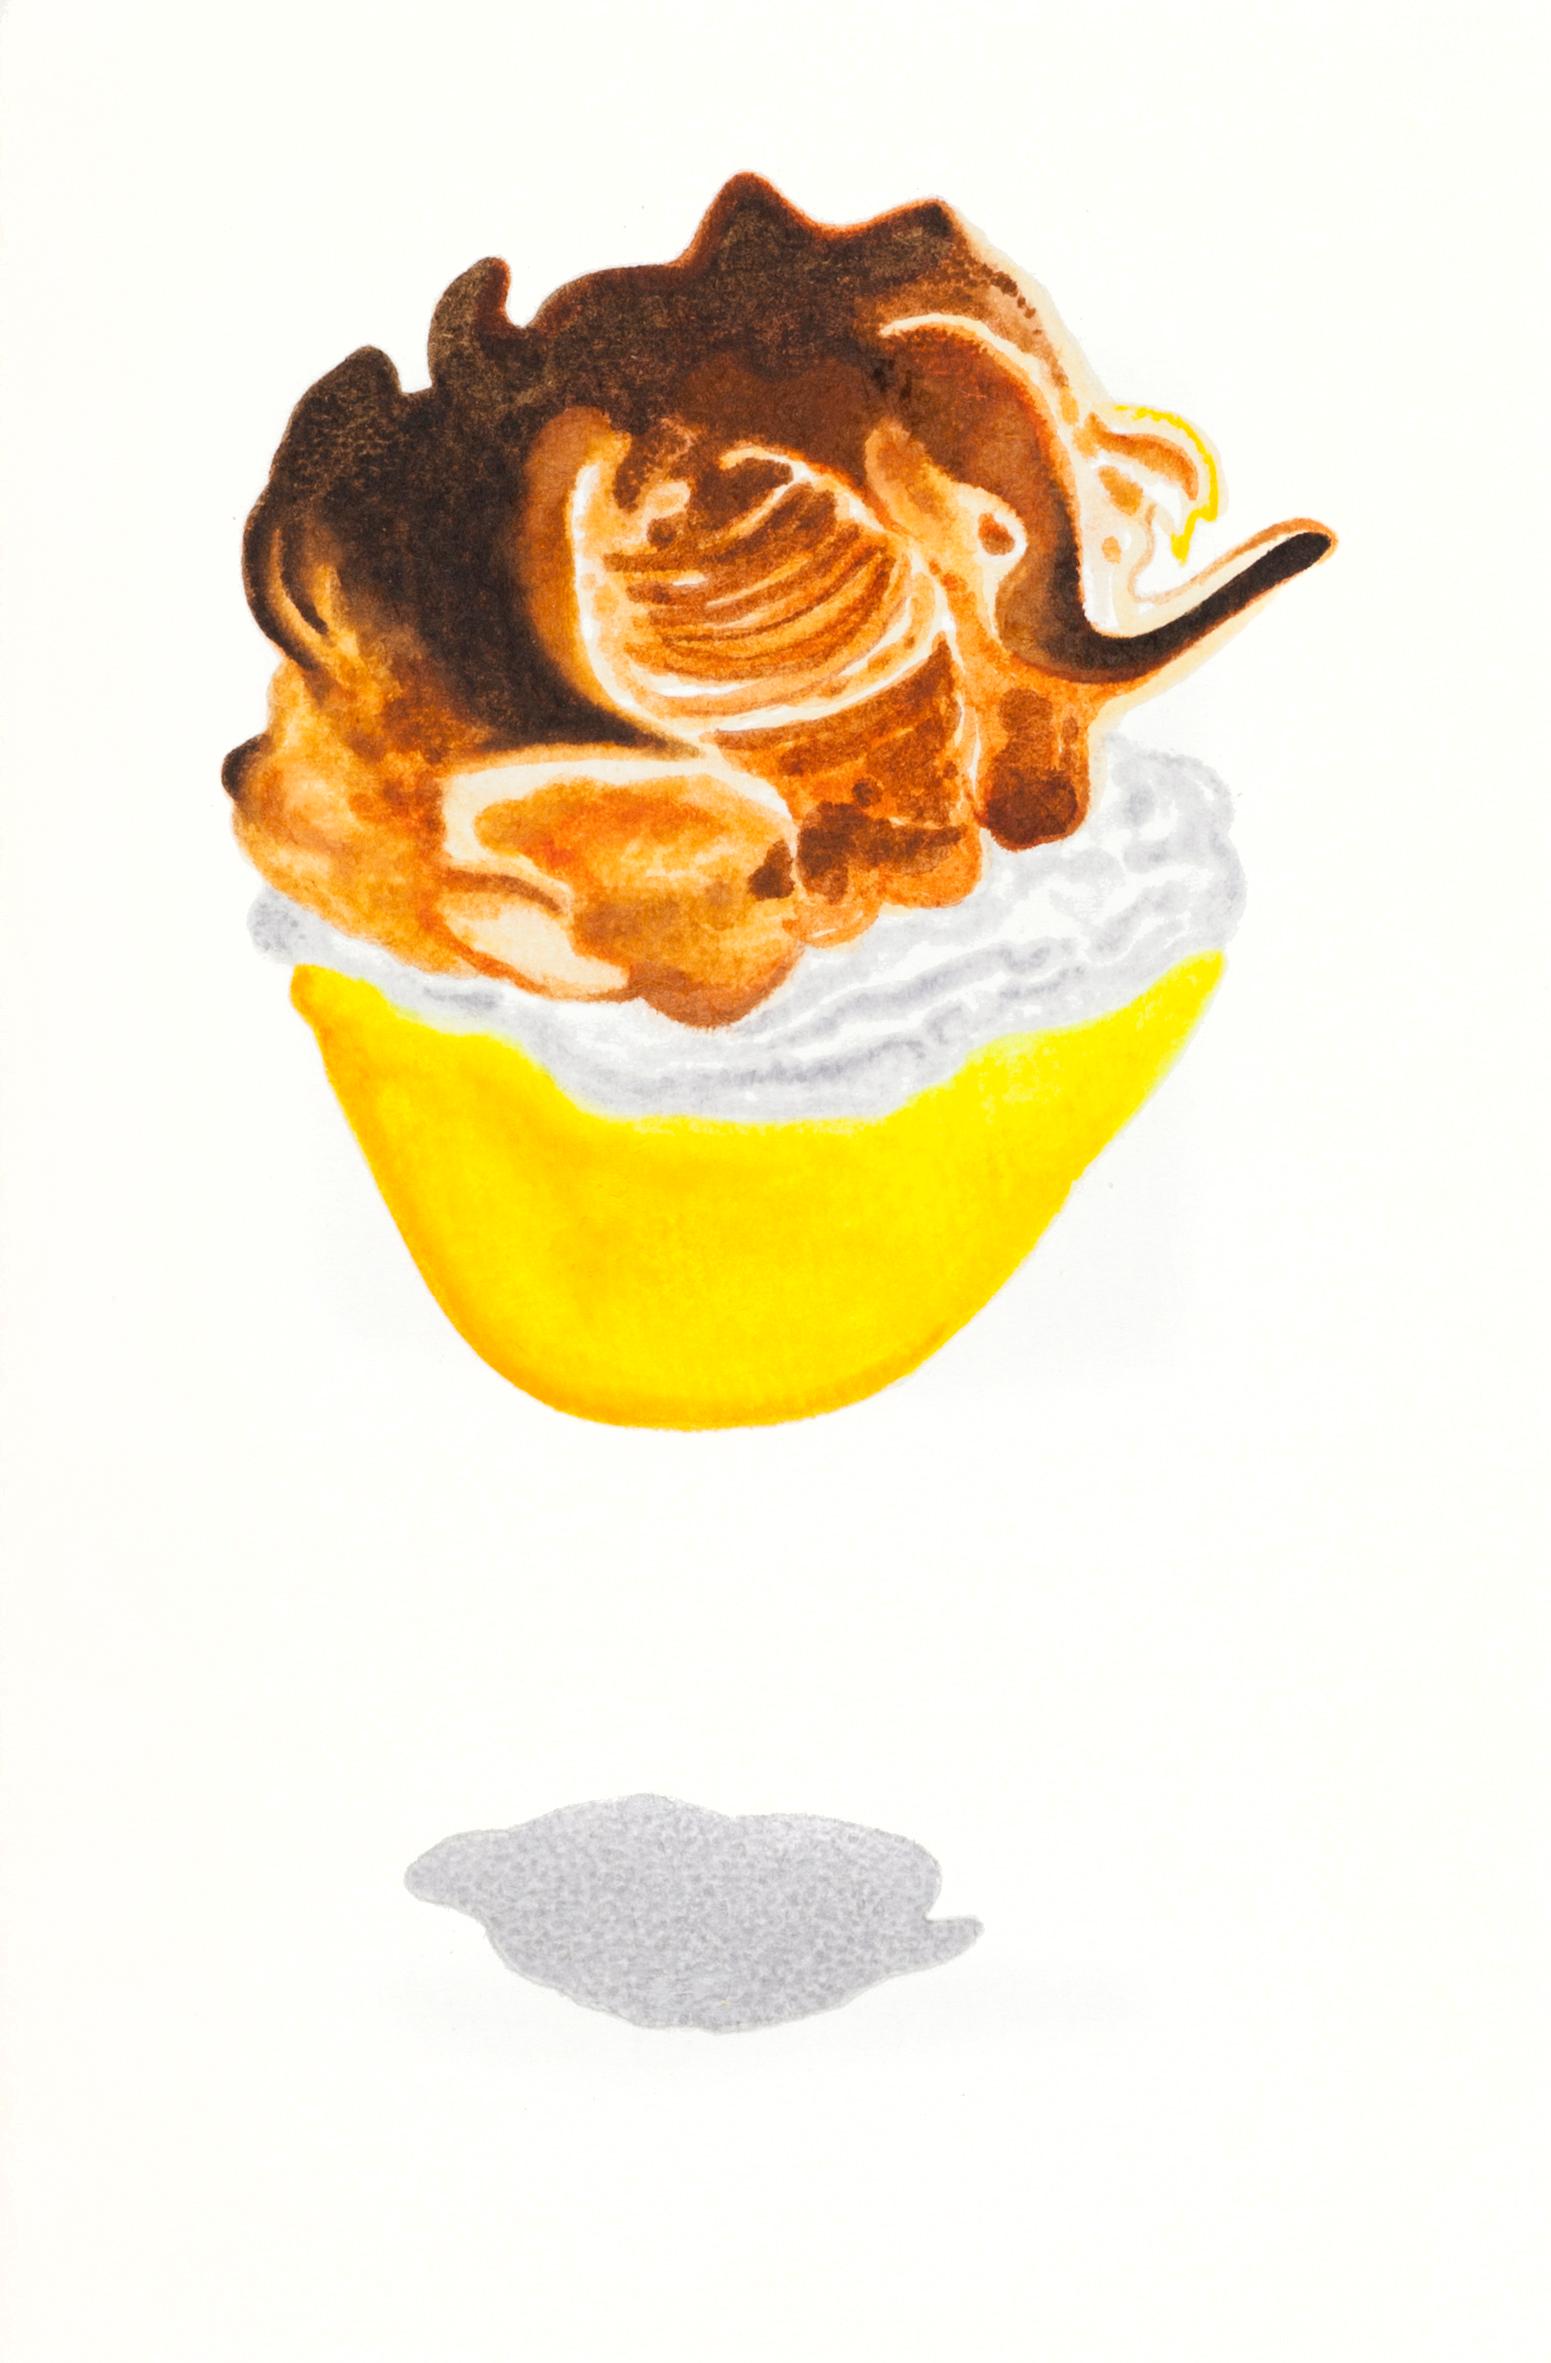 Still-Life Nancy Lamb  - Petit dessert à manches bouffantes contemporain à l'aquarelle en crème sur papier, idéal pour la cuisine/le bar